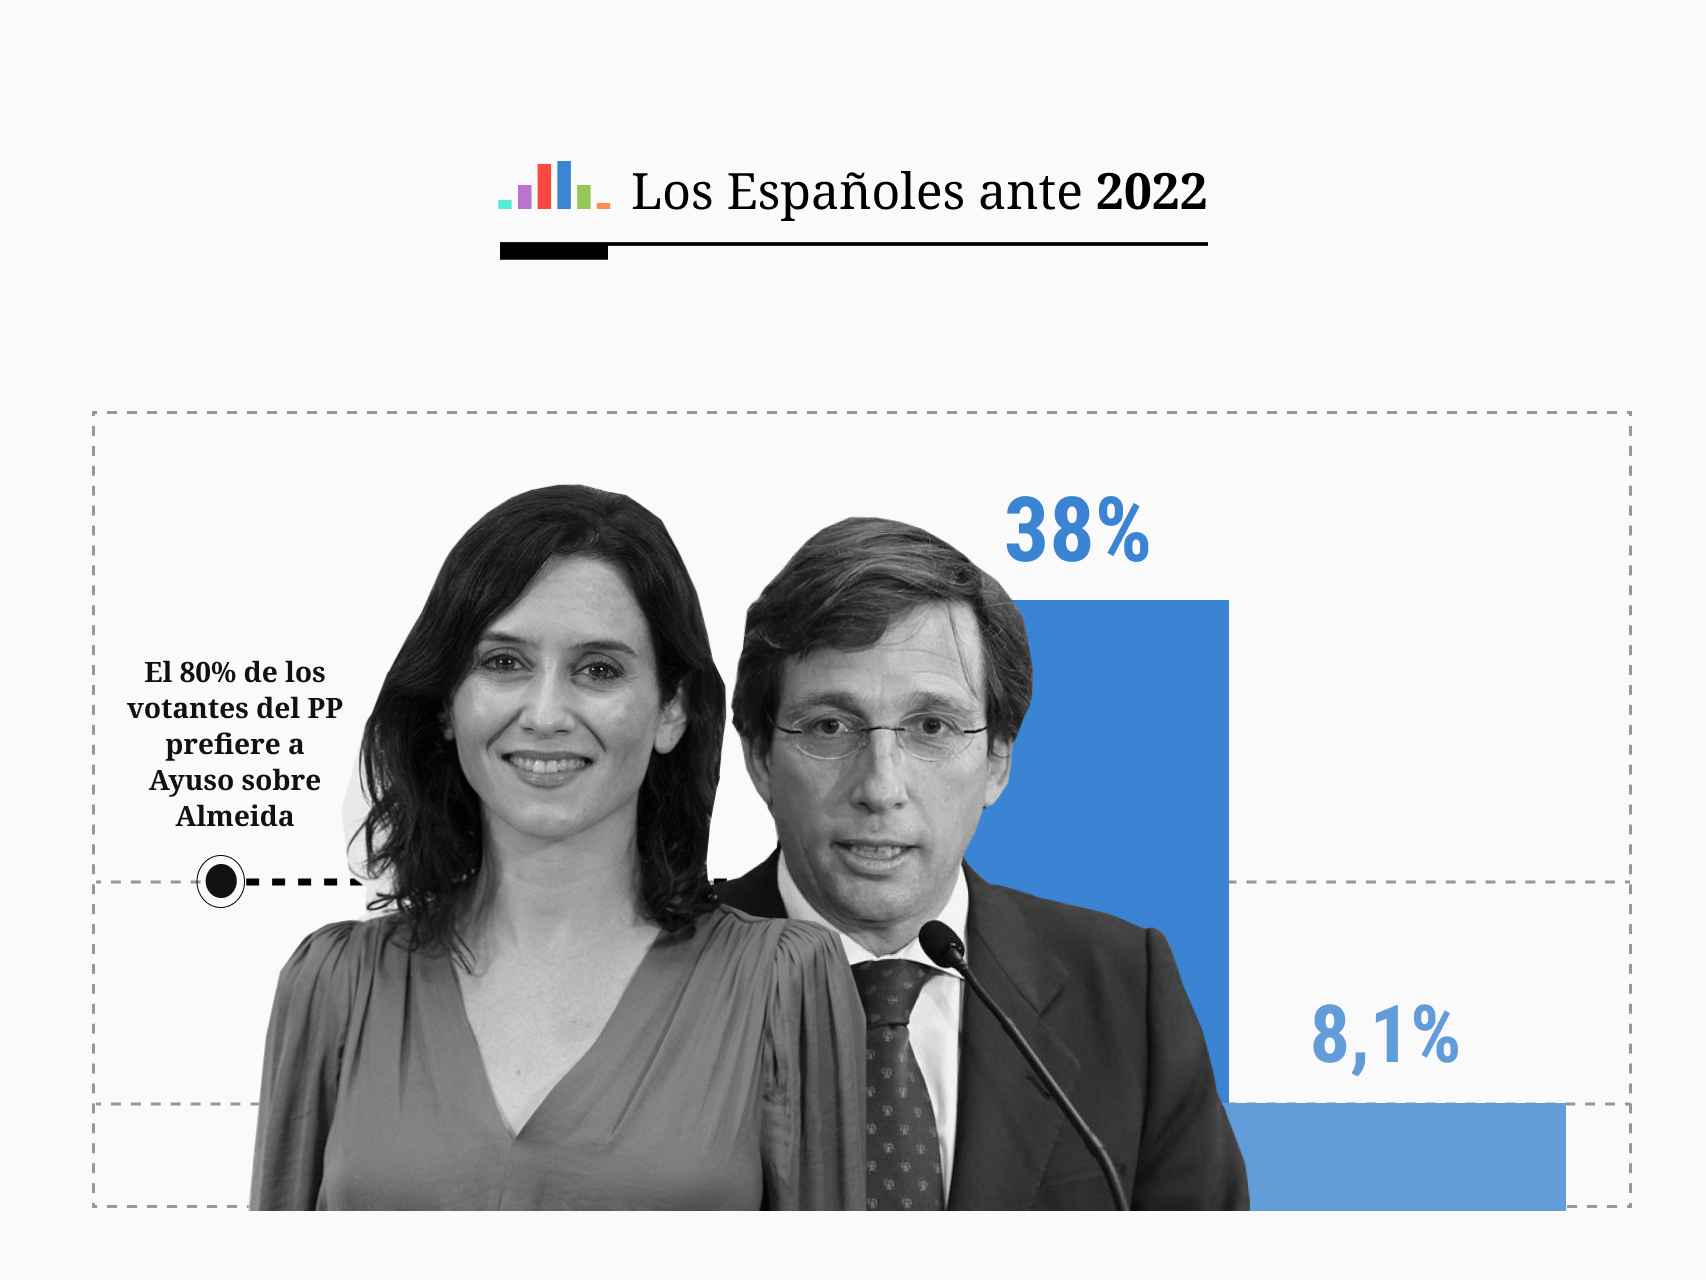 El 80% de los votantes del PP prefiere a Ayuso sobre Almeida como líder del partido en Madrid